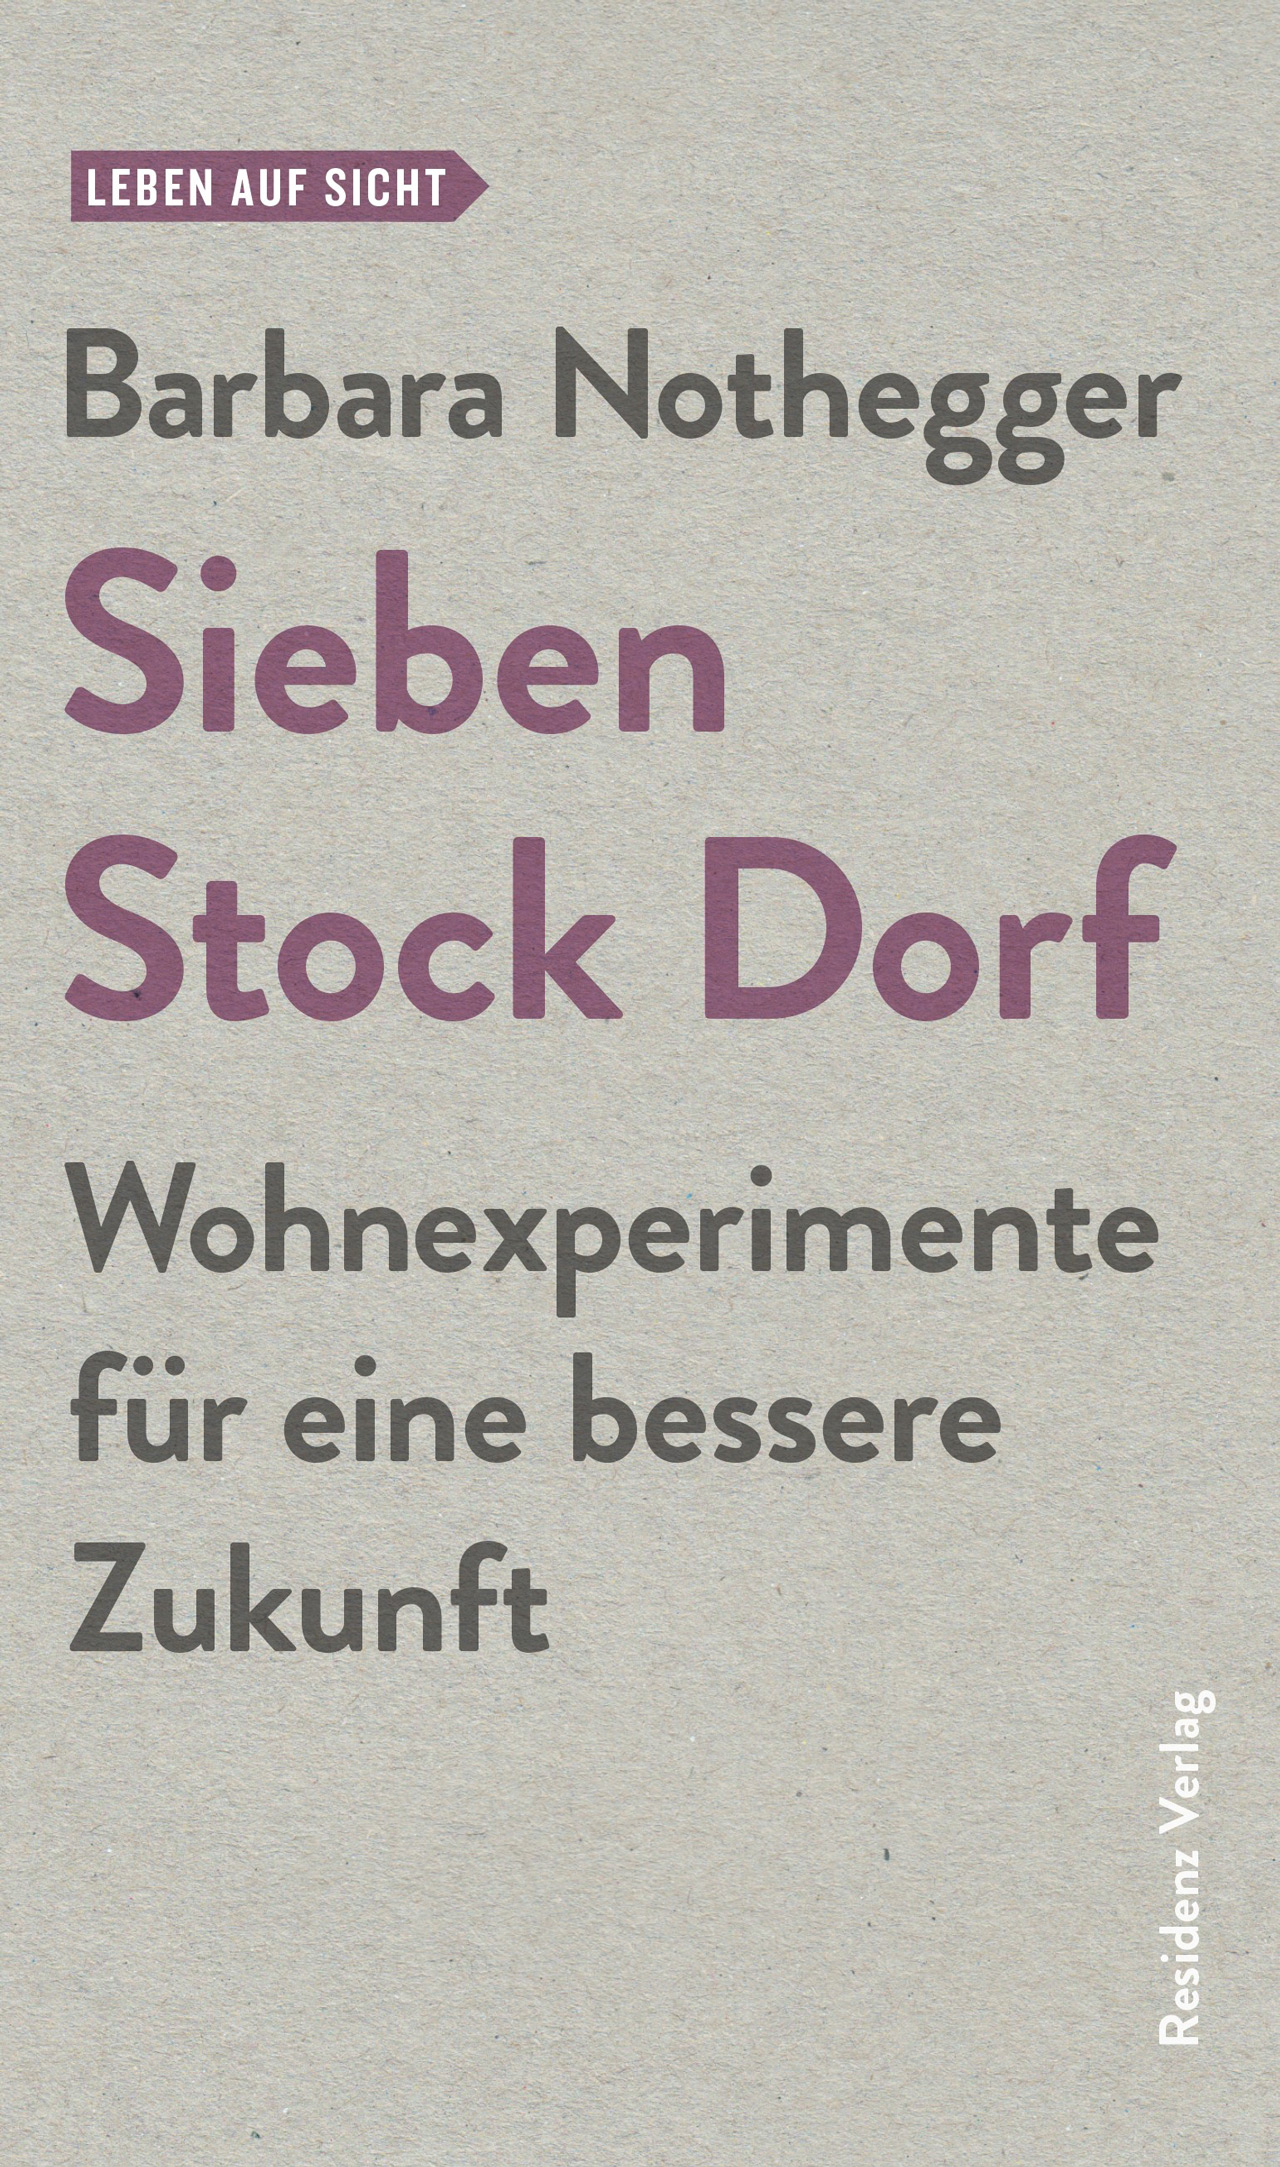 Cover des Buchs "Sieben Stock Dorf" von Barbara Nothegger